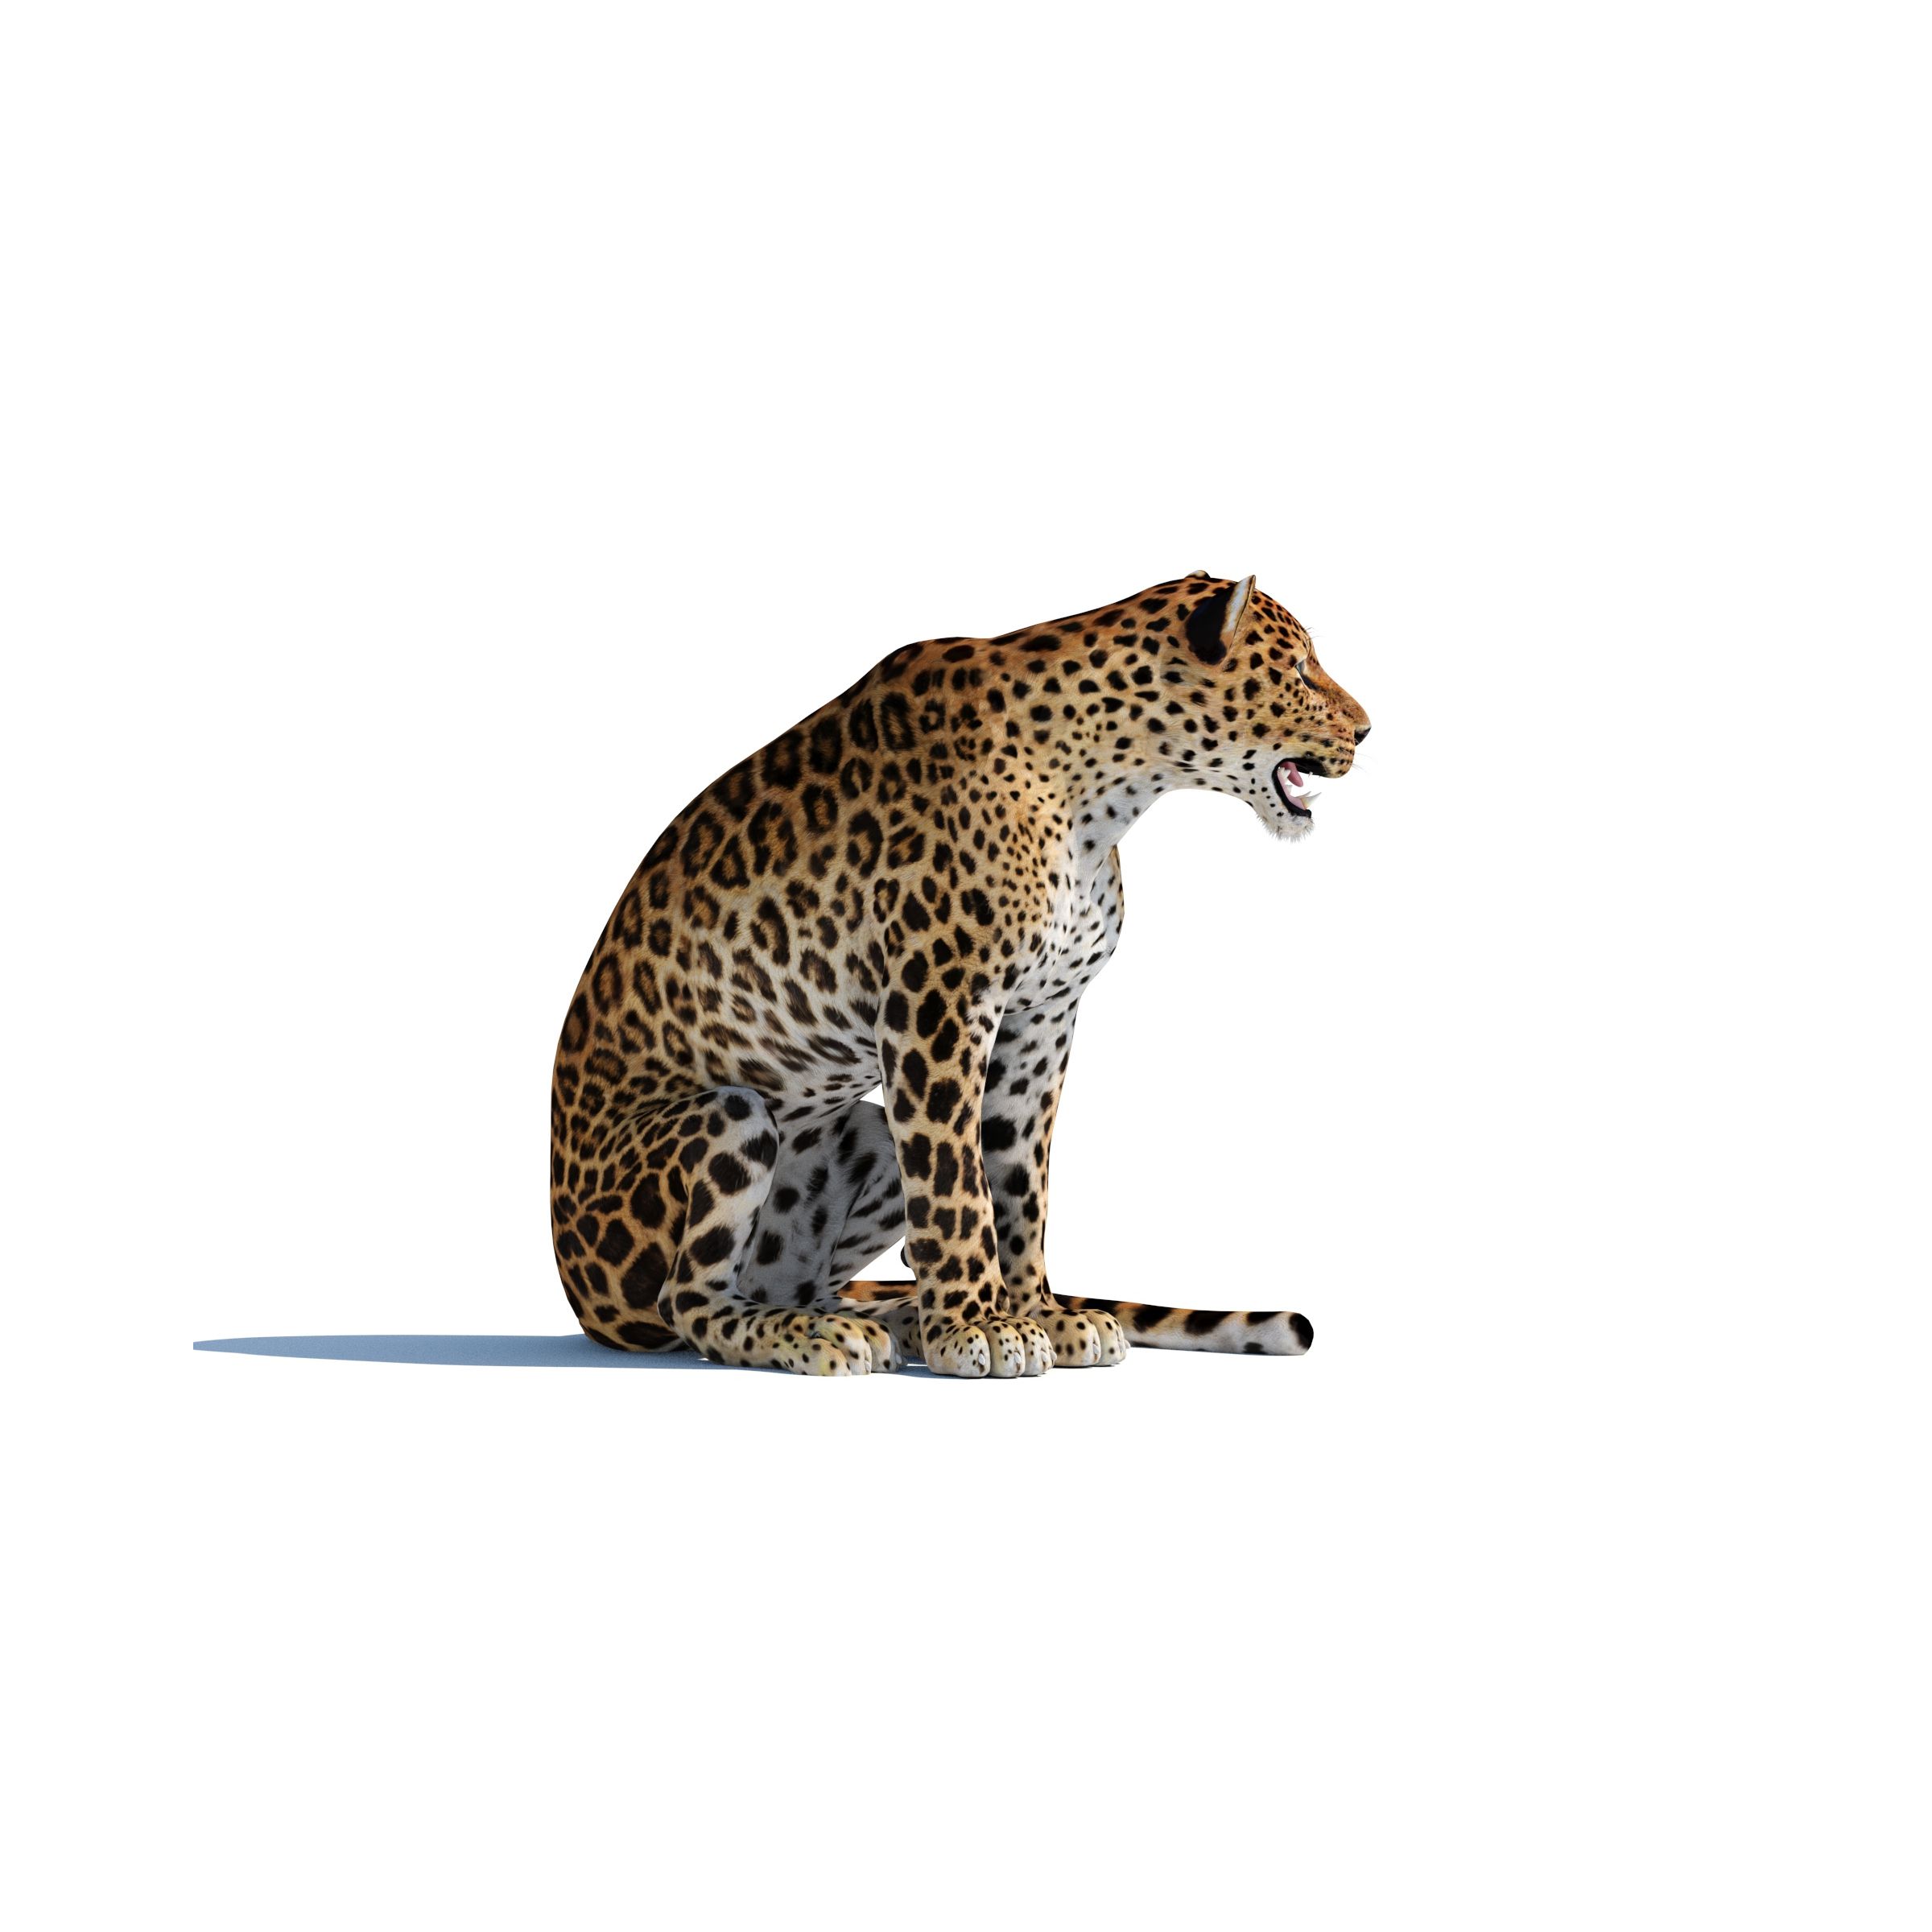 Rigged Sri Lankan Leopard 3D Model